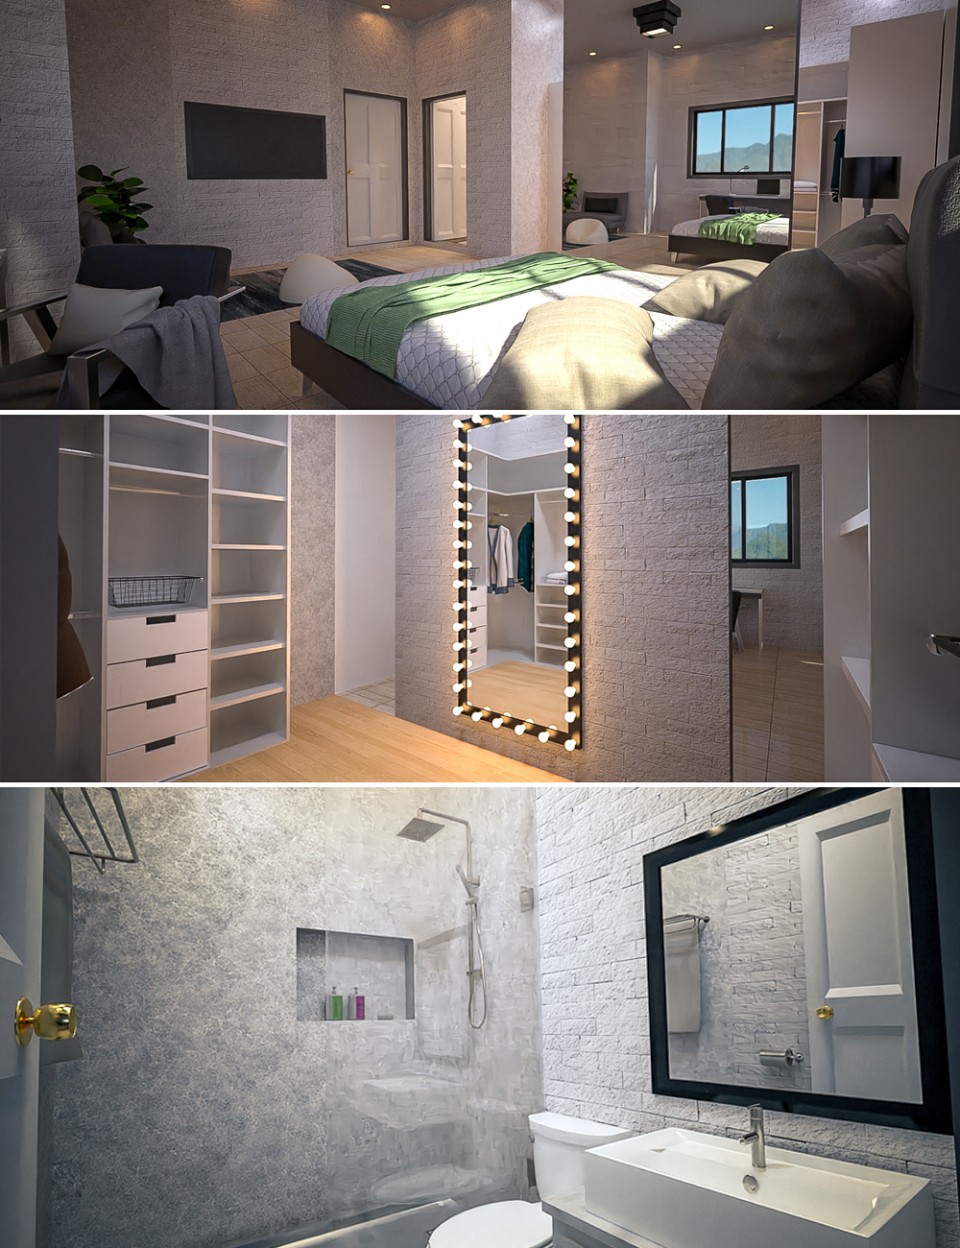 The Master Bedroom_DAZ3D下载站